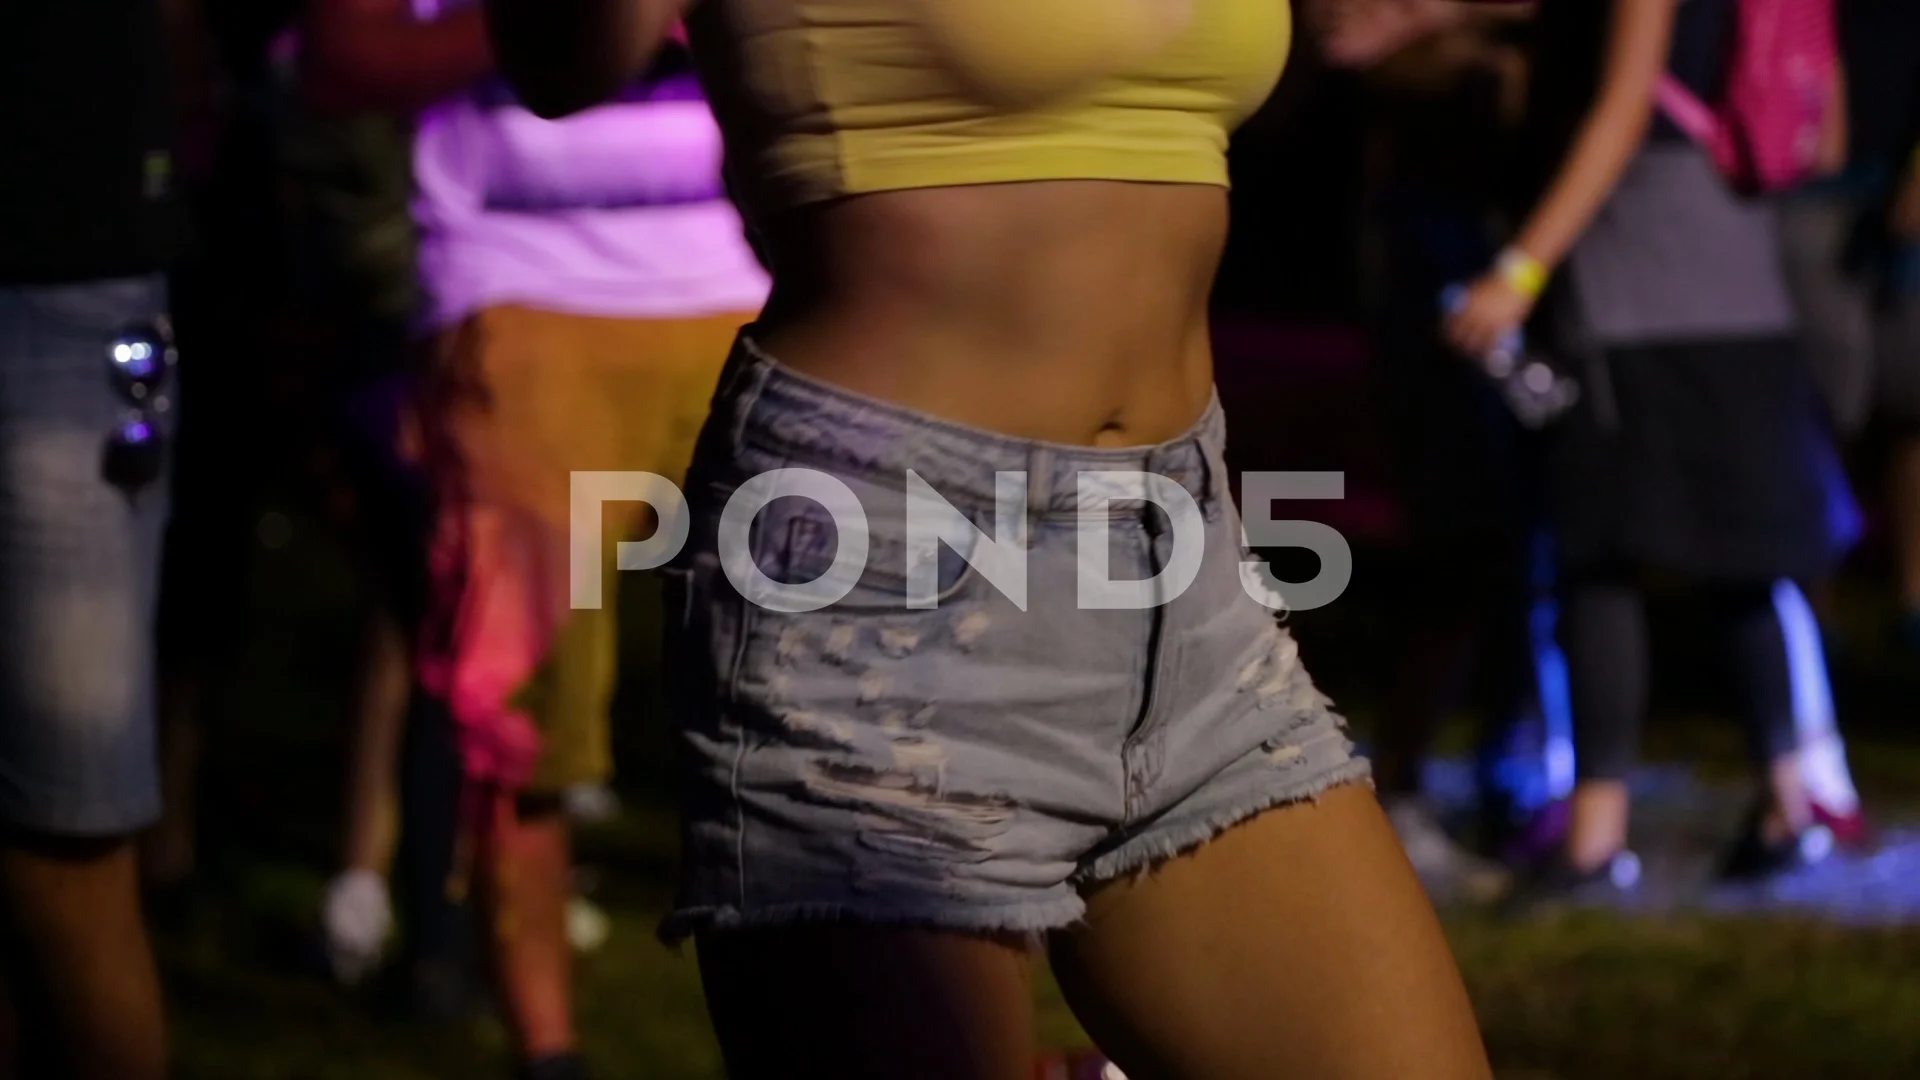 https://images.pond5.com/teenage-girl-dancing-rave-techno-footage-106595743_prevstill.jpeg